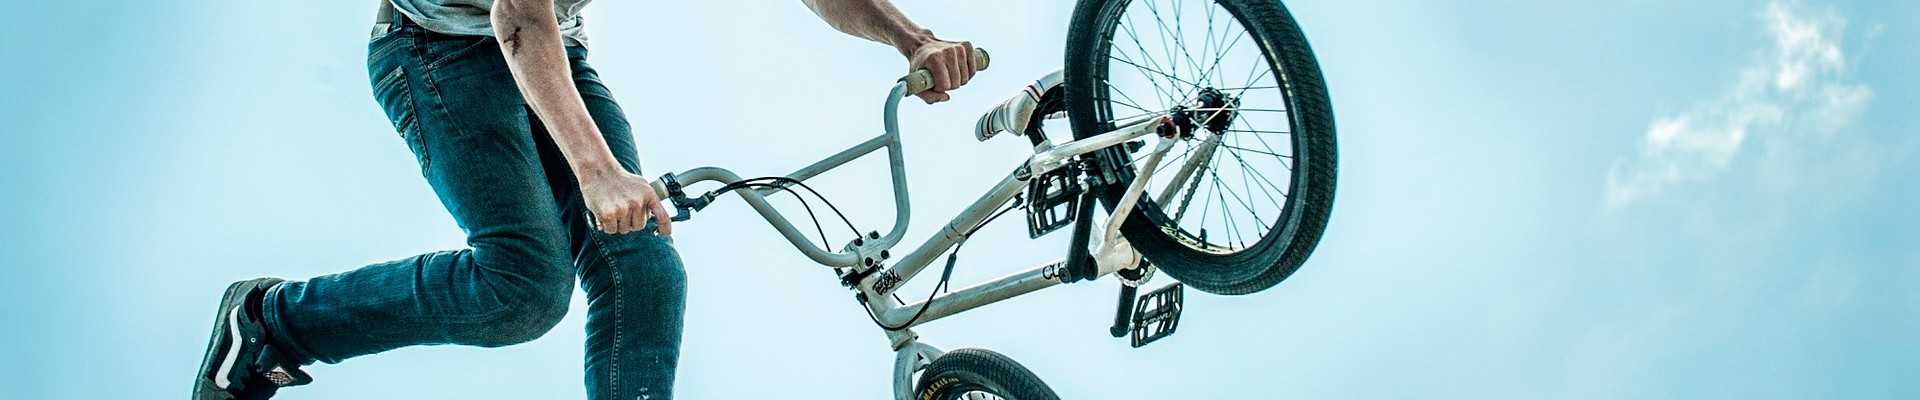 Bicicletas BMX | Comprar en Pelin Bicicletas